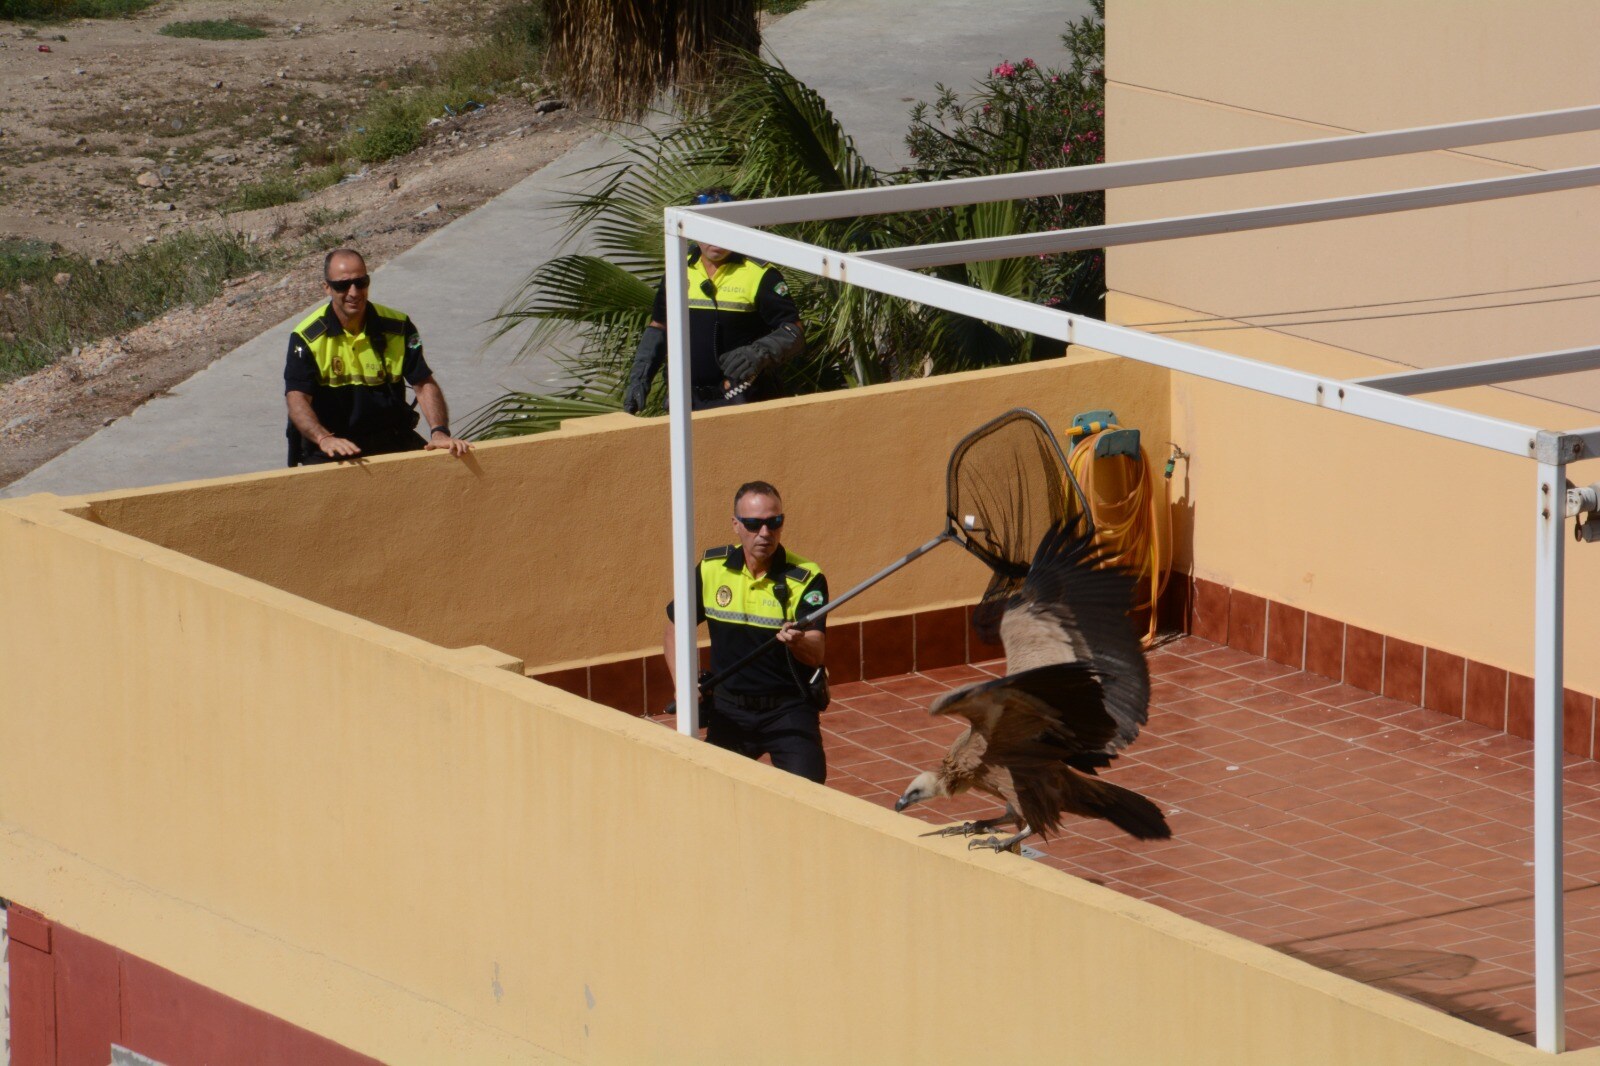 Agentes del GRUPRONA (Grupo de Protección de la Naturaleza de la Policía Local de Málaga) intentaron rescatar al animal de grandes dimensiones pero según los vecinos, al final acabó huyen en dirección a la desembocadura del Guadalhorce.